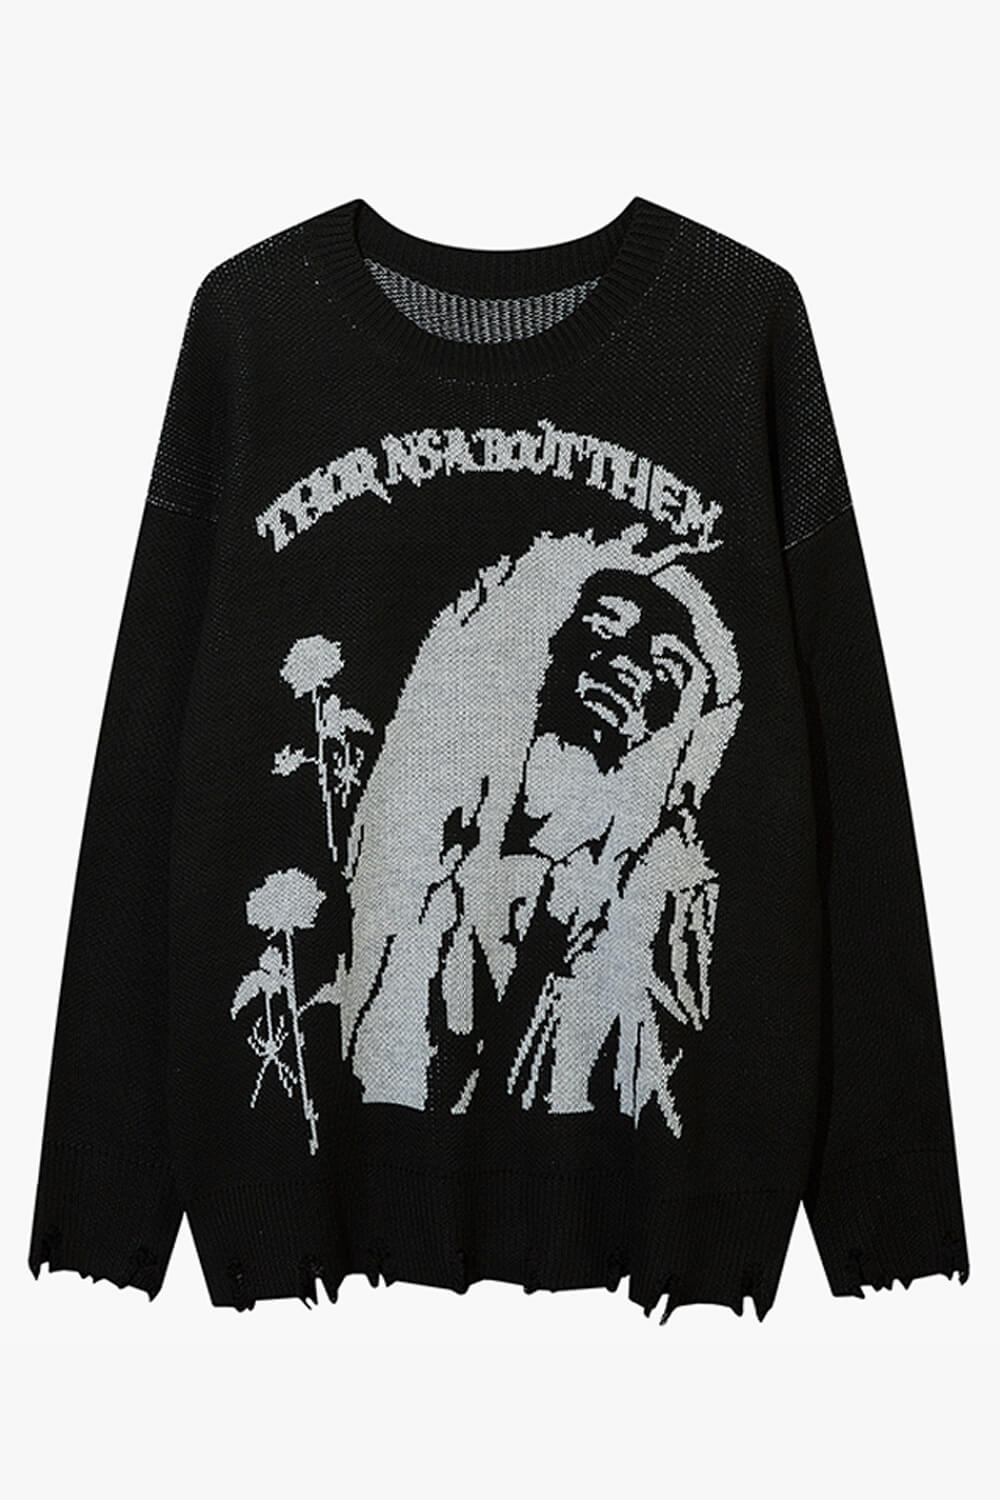 Dark Grunge Sweater Thorns About Them